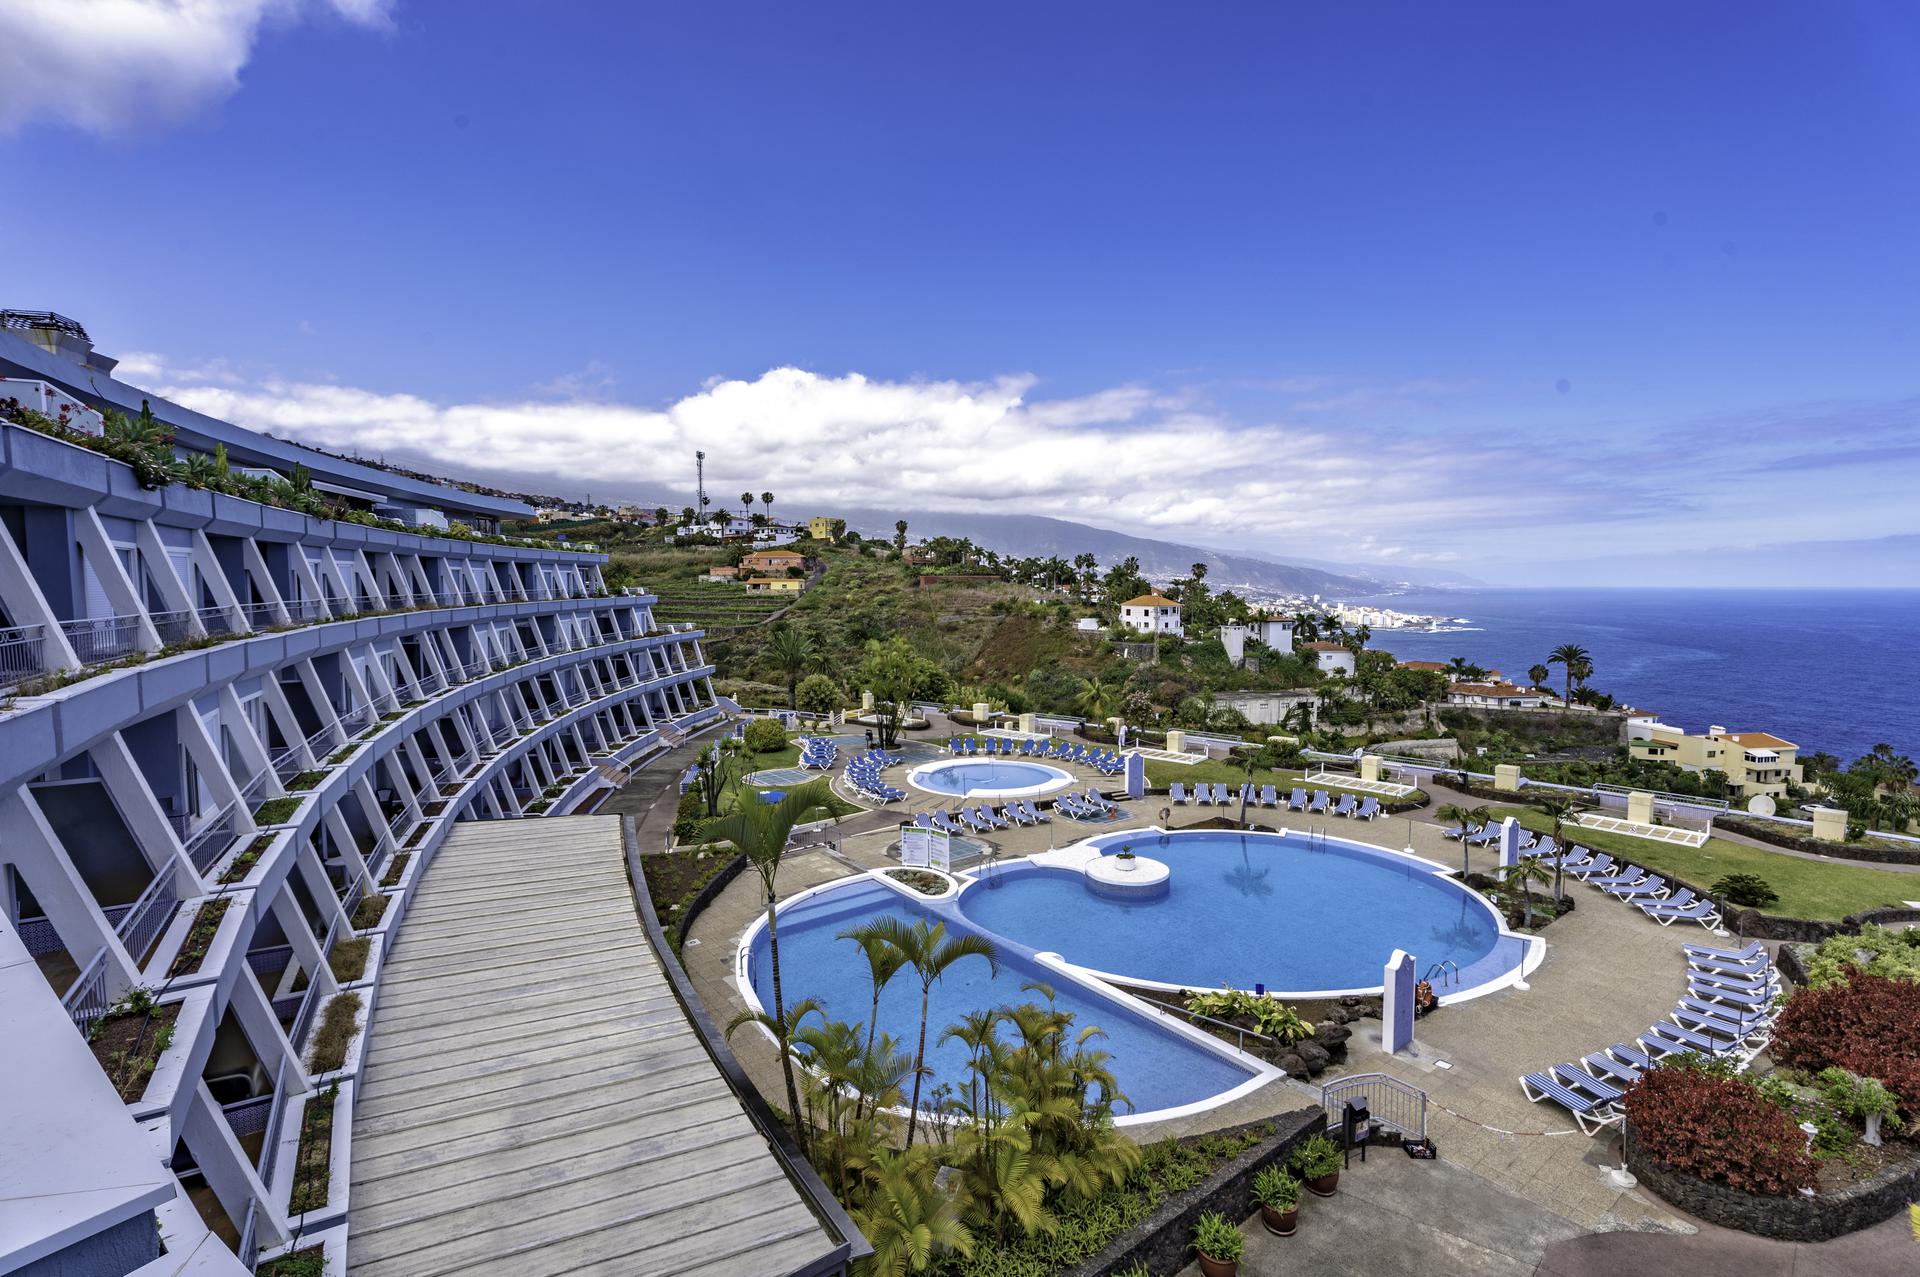 Coral Hotels incorpora a su portfolio nuevos apartamentos vacacionales en Tenerife 